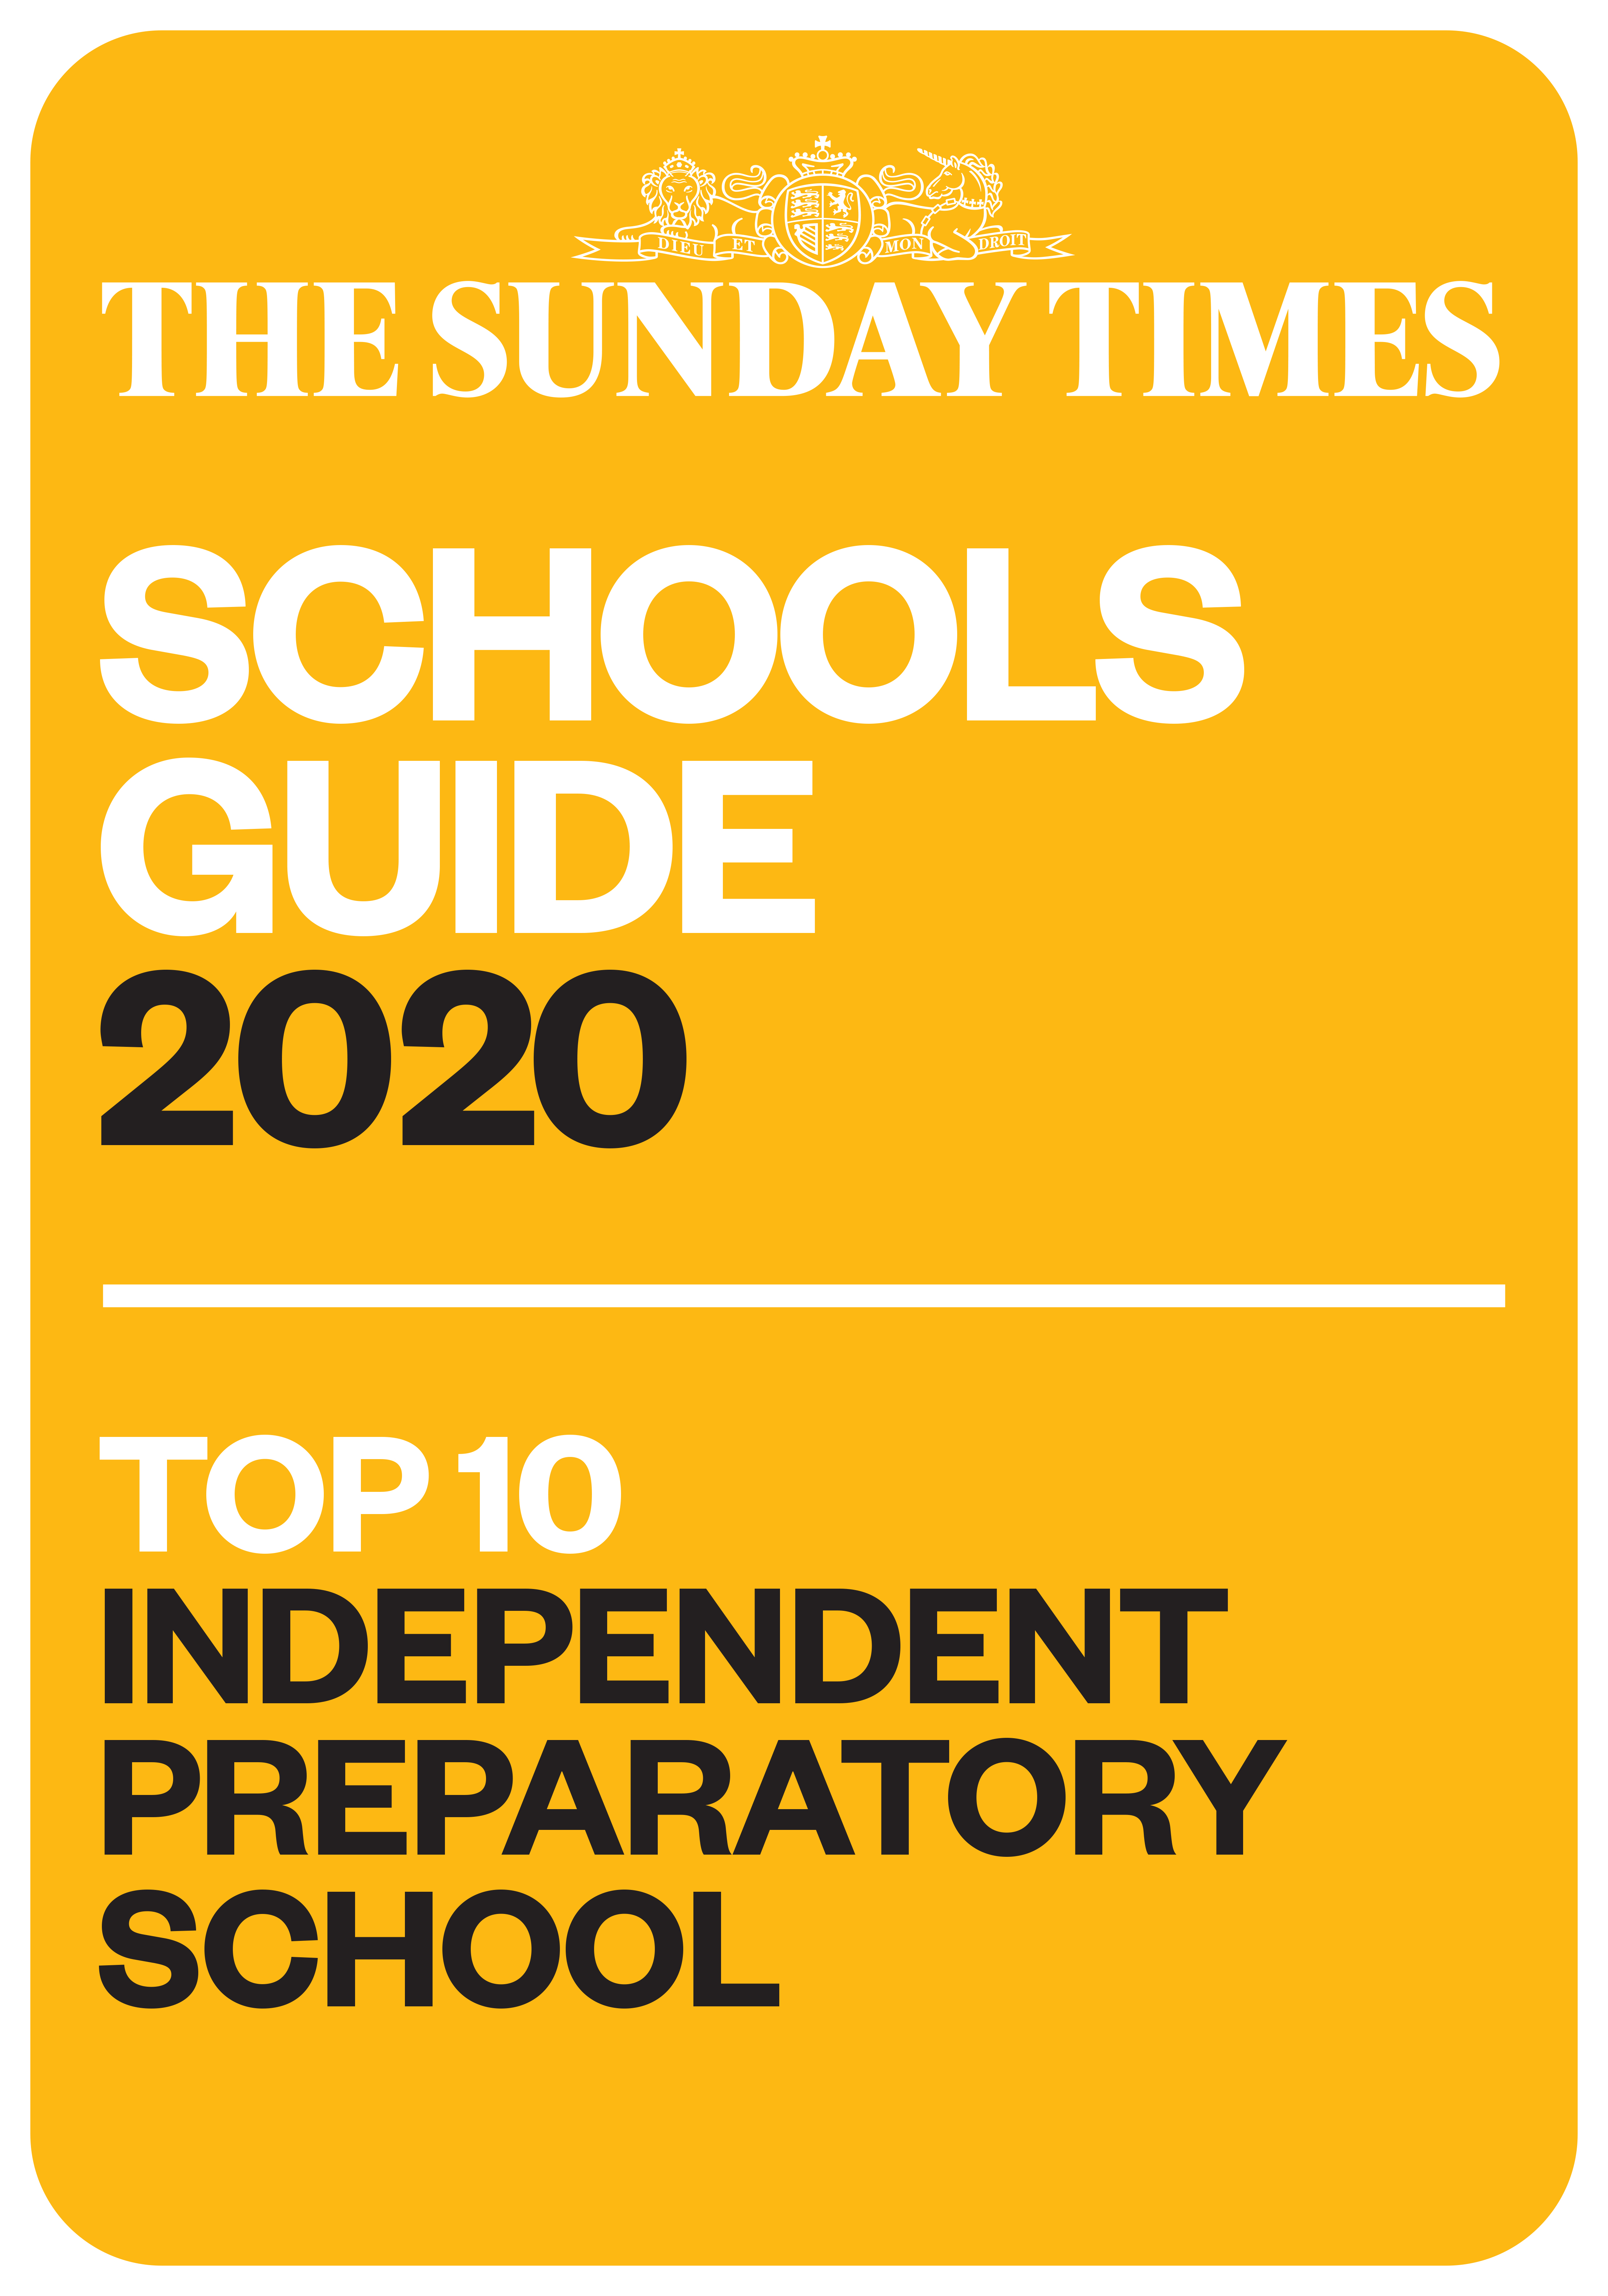 Top 10 Independent preparatory school